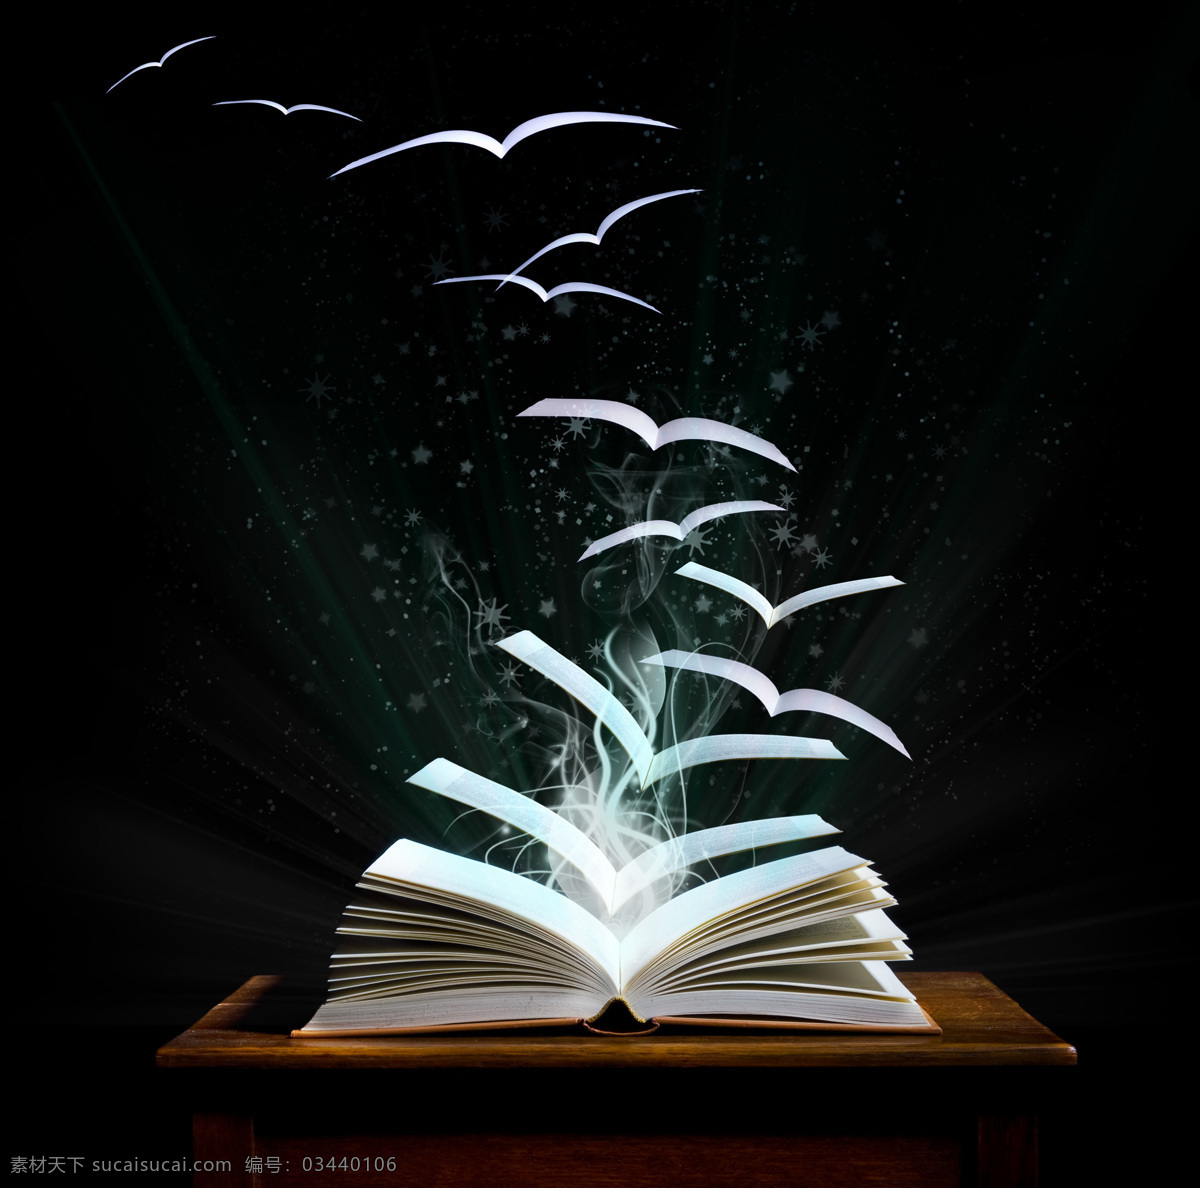 创意 飞翔 书本 发光的书本 光芒 创意书本 书籍 知识 学习 其他类别 生活百科 黑色